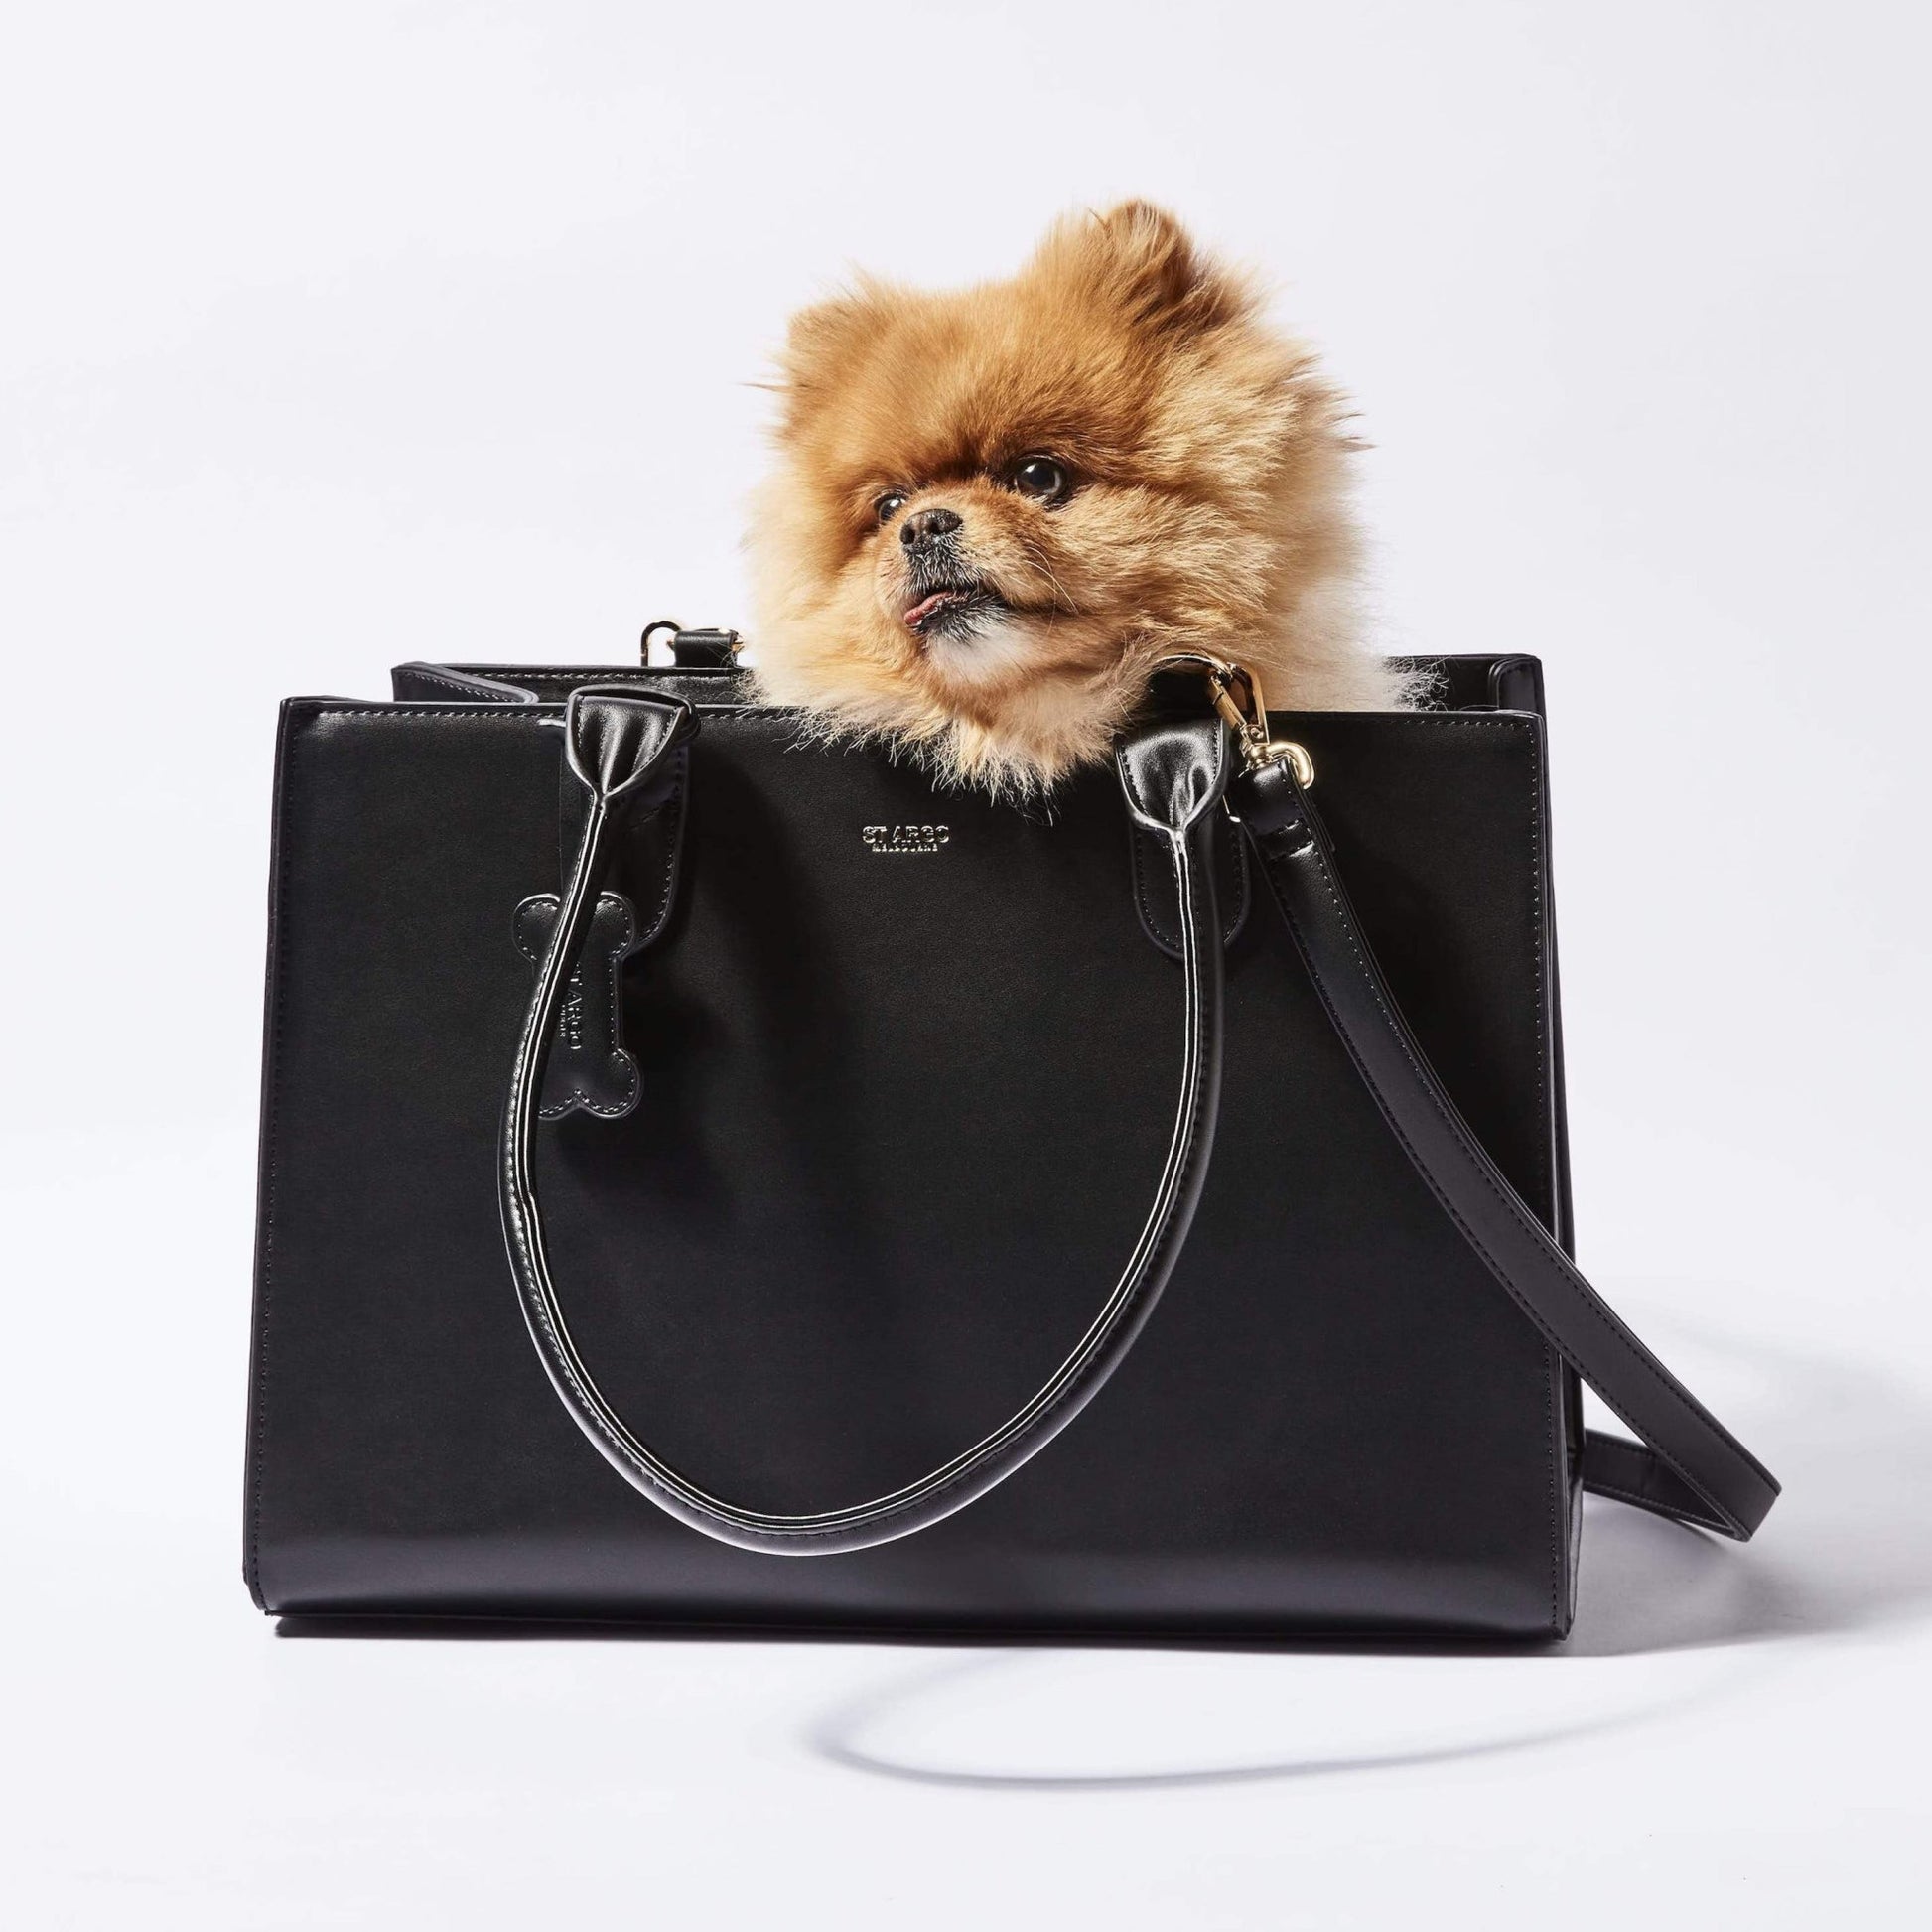 Black LOLA designer dog carrier in vegan leather with pomeranian